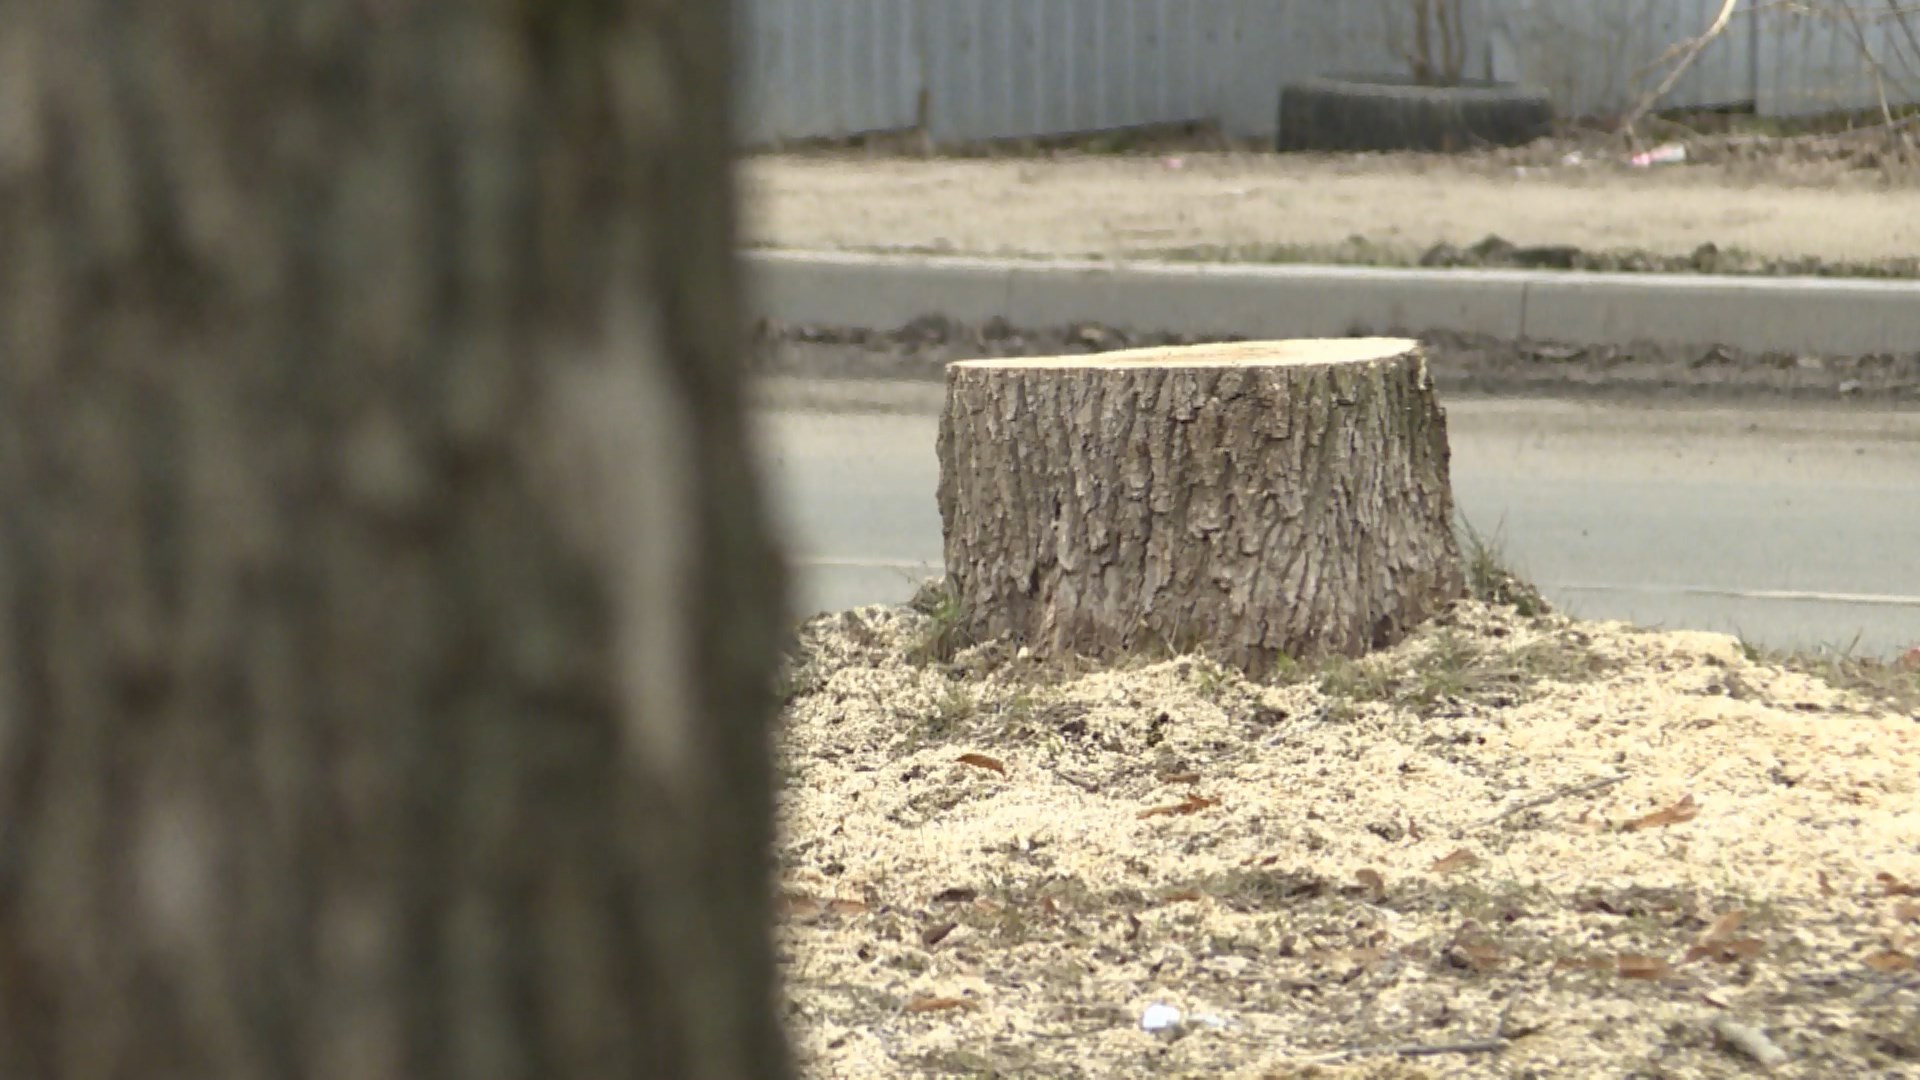 Жителей микрорайона Октябрьский в Костроме взволновала вырубка деревьев в сквере